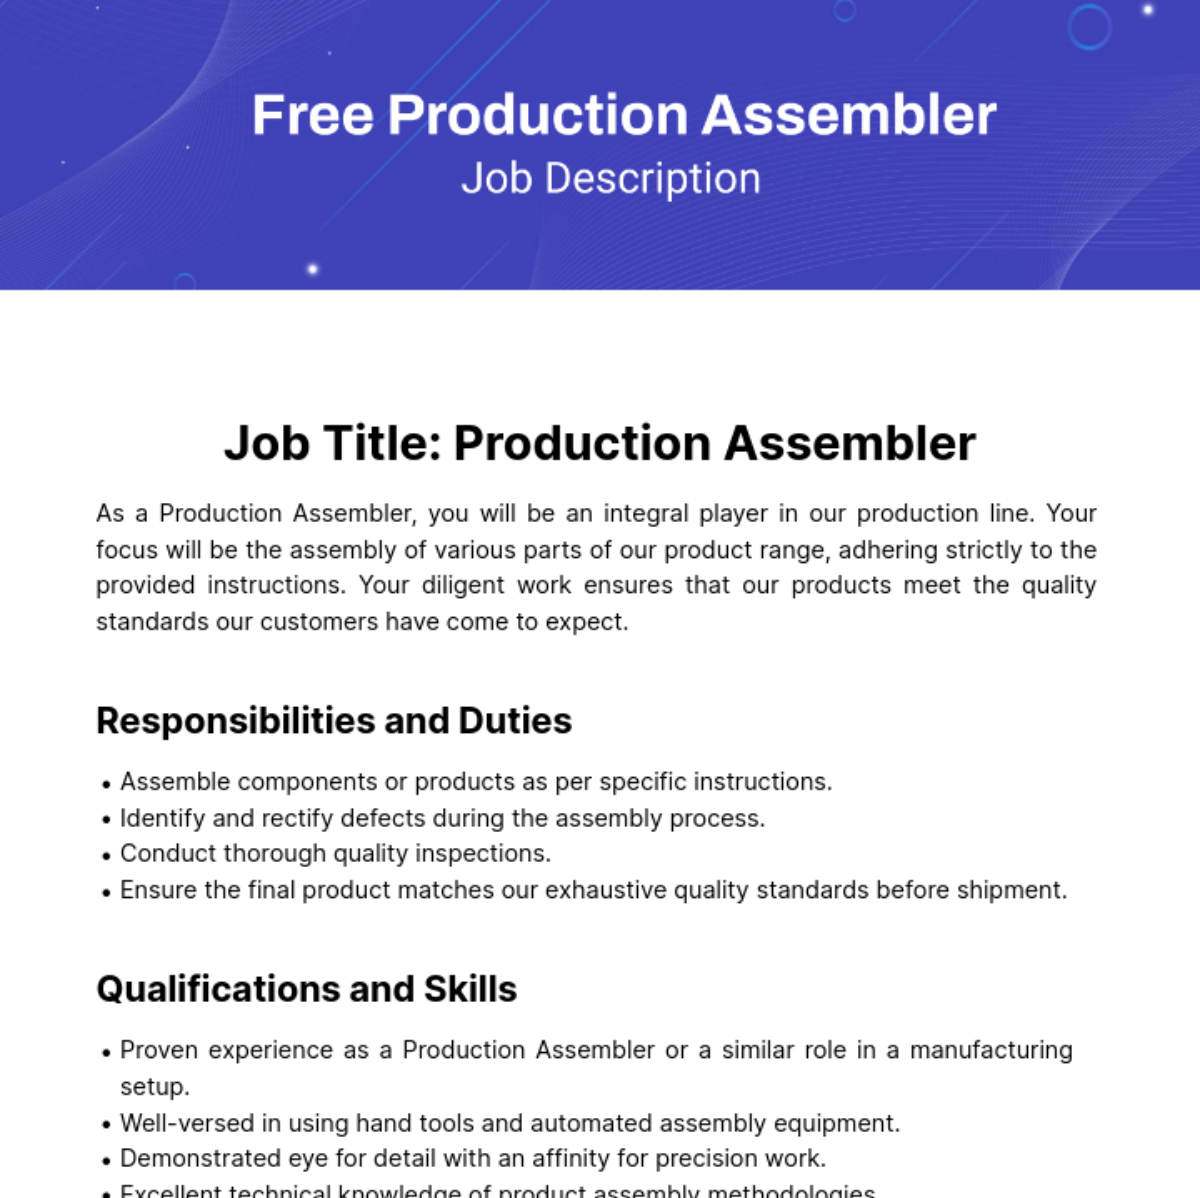 Free Production Assembler Job Description Template